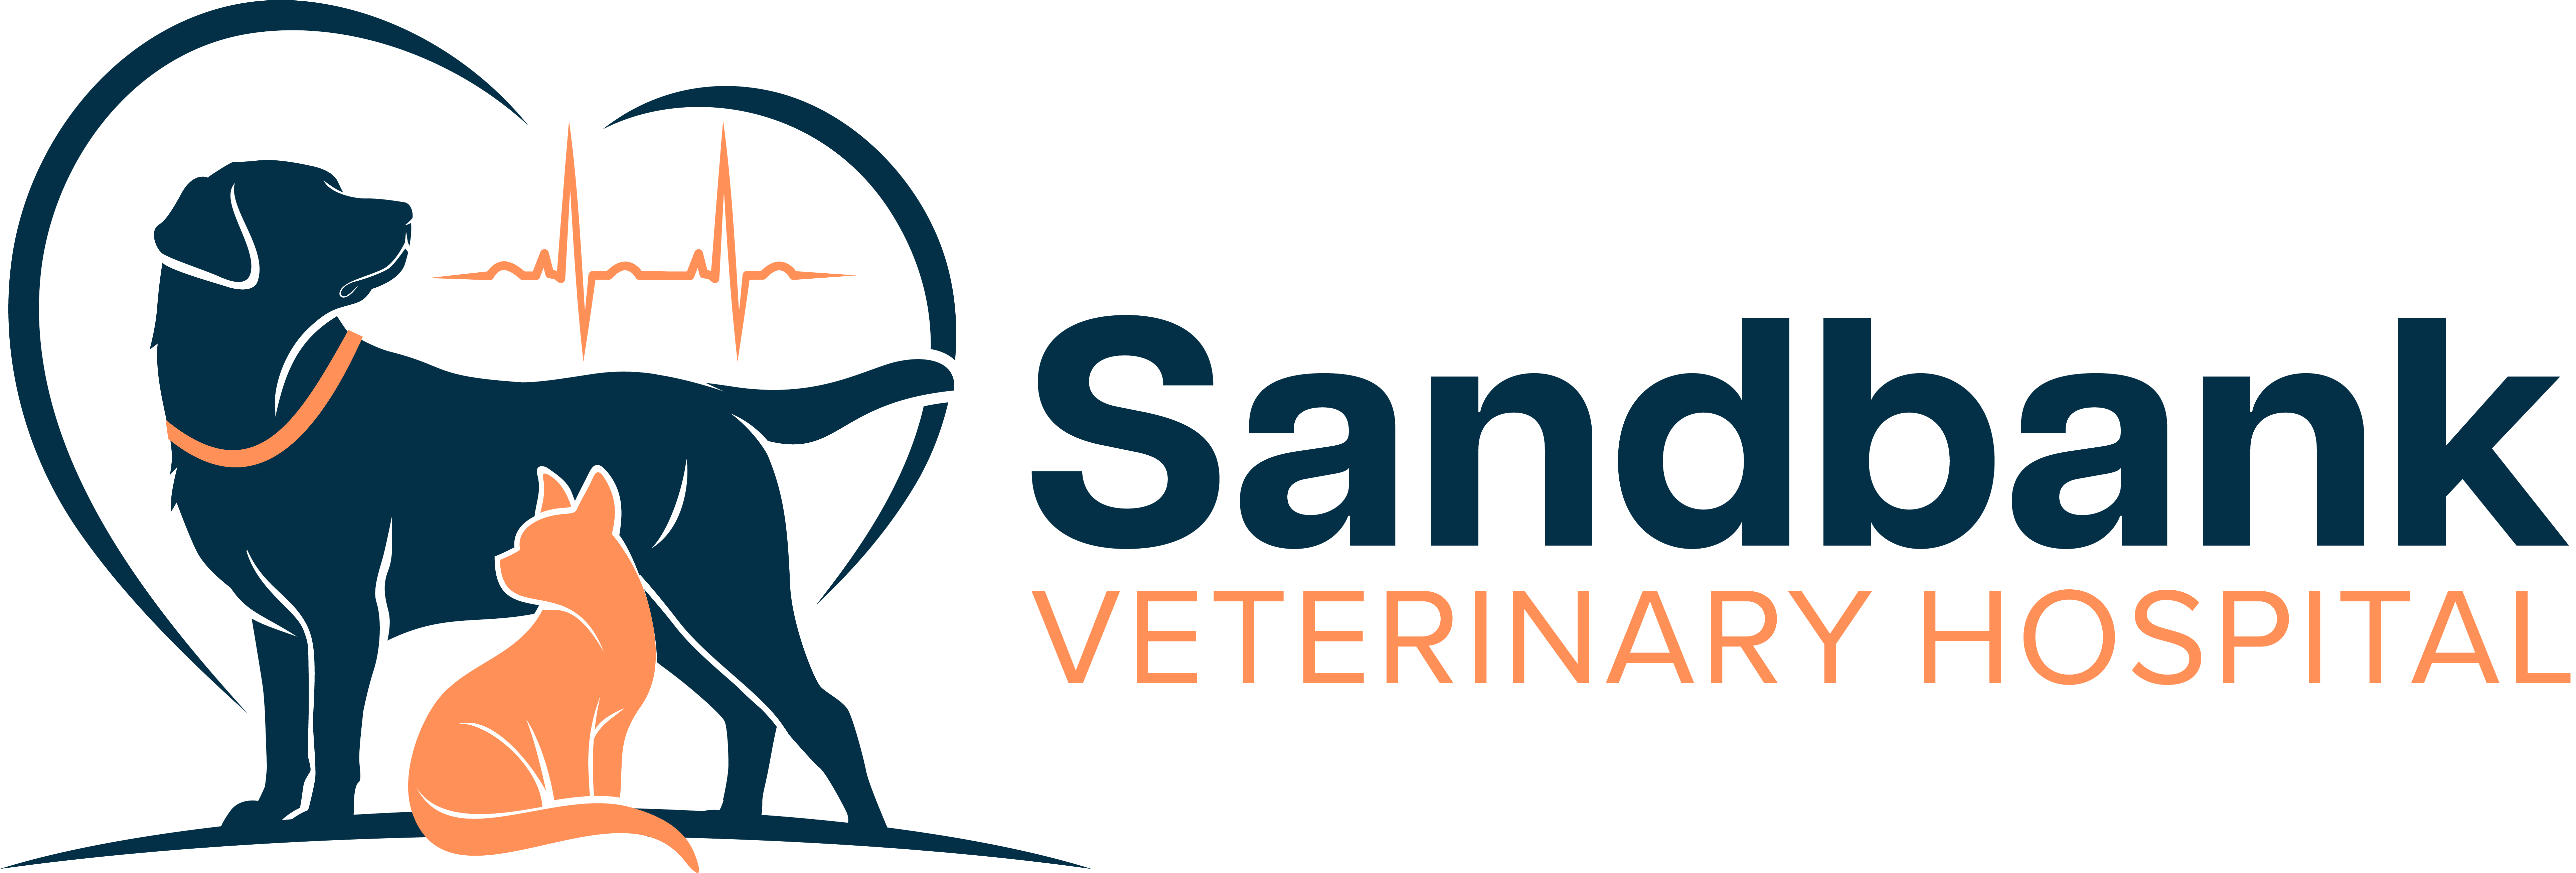 Sandbank Veterinary Hospital